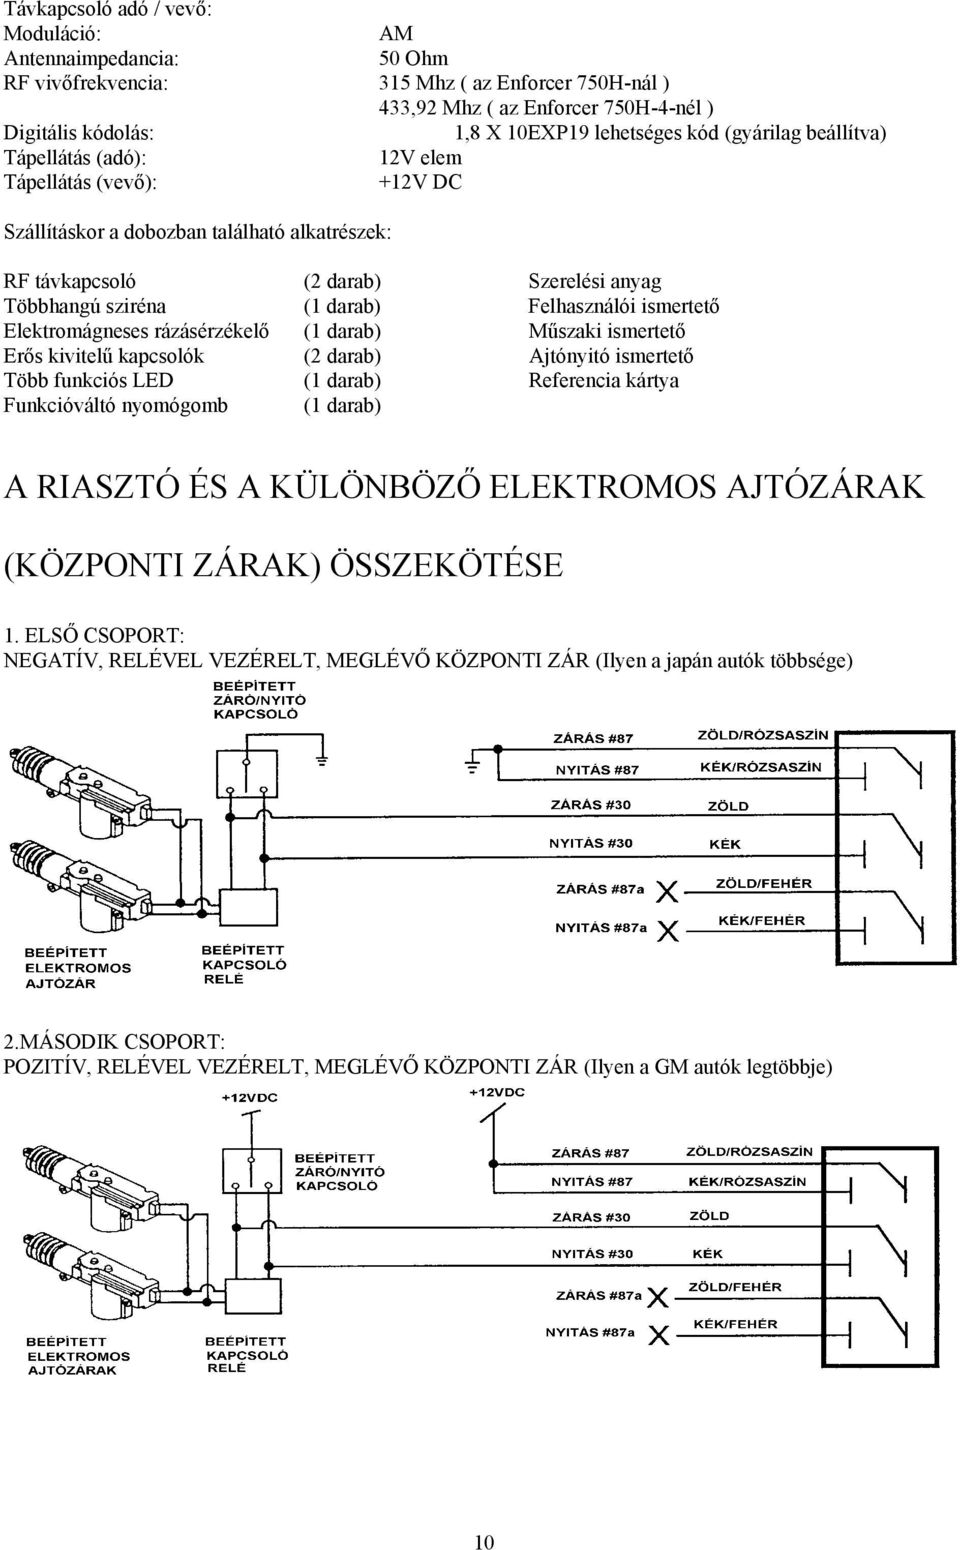 Felhasználói ismertető Elektromágneses rázásérzékelő (1 darab) Műszaki ismertető Erős kivitelű kapcsolók (2 darab) Ajtónyitó ismertető Több funkciós LED (1 darab) Referencia kártya Funkcióváltó